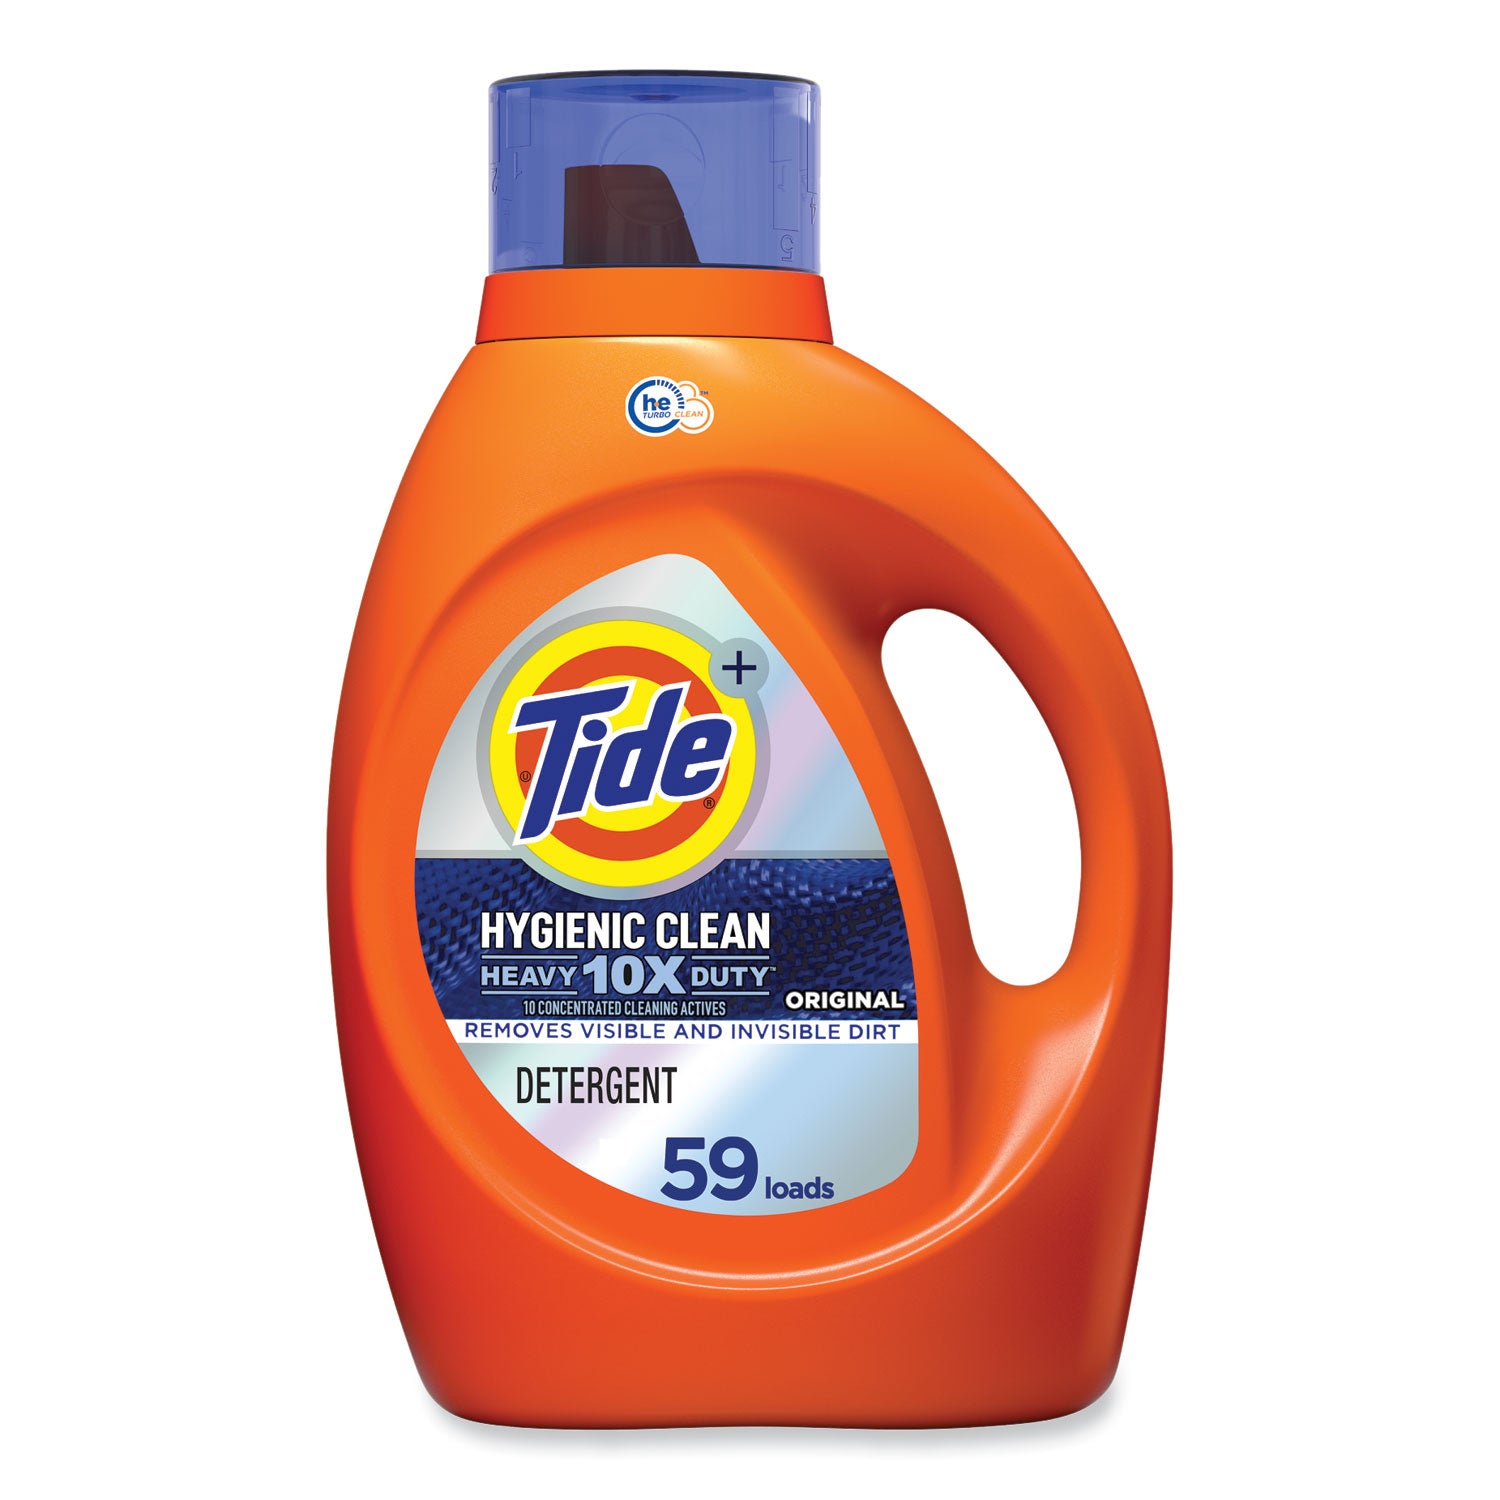 hygienic-clean-heavy-10x-duty-liquid-laundry-detergent-original-92-oz-bottle_pgc00166 - 1